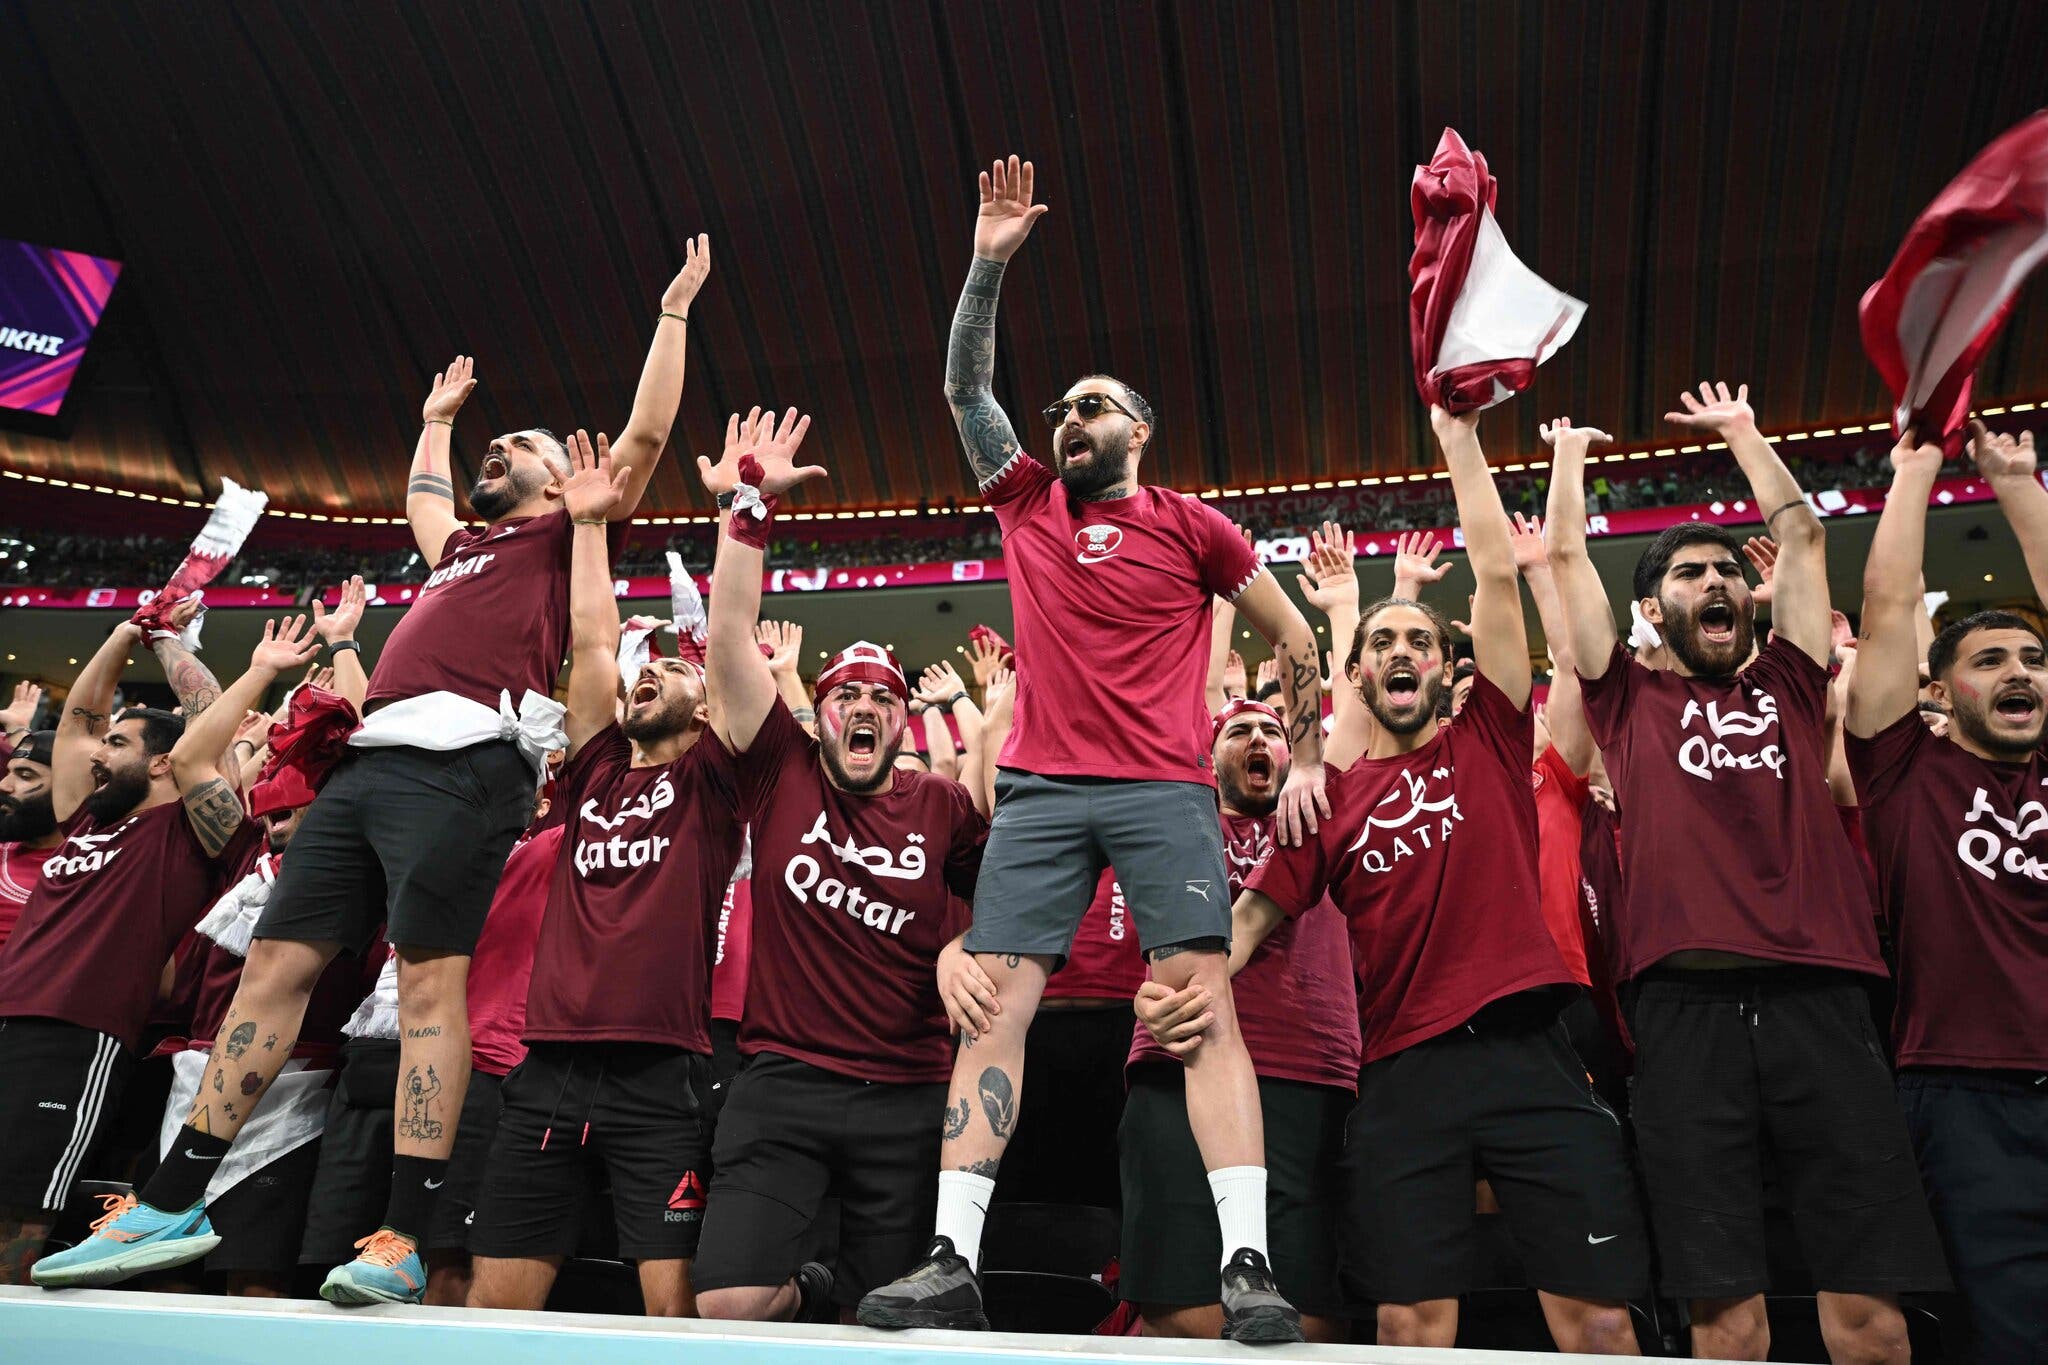 النيويورك تايمز: قطر استأجرت مشجعين وجماهير من لبنان